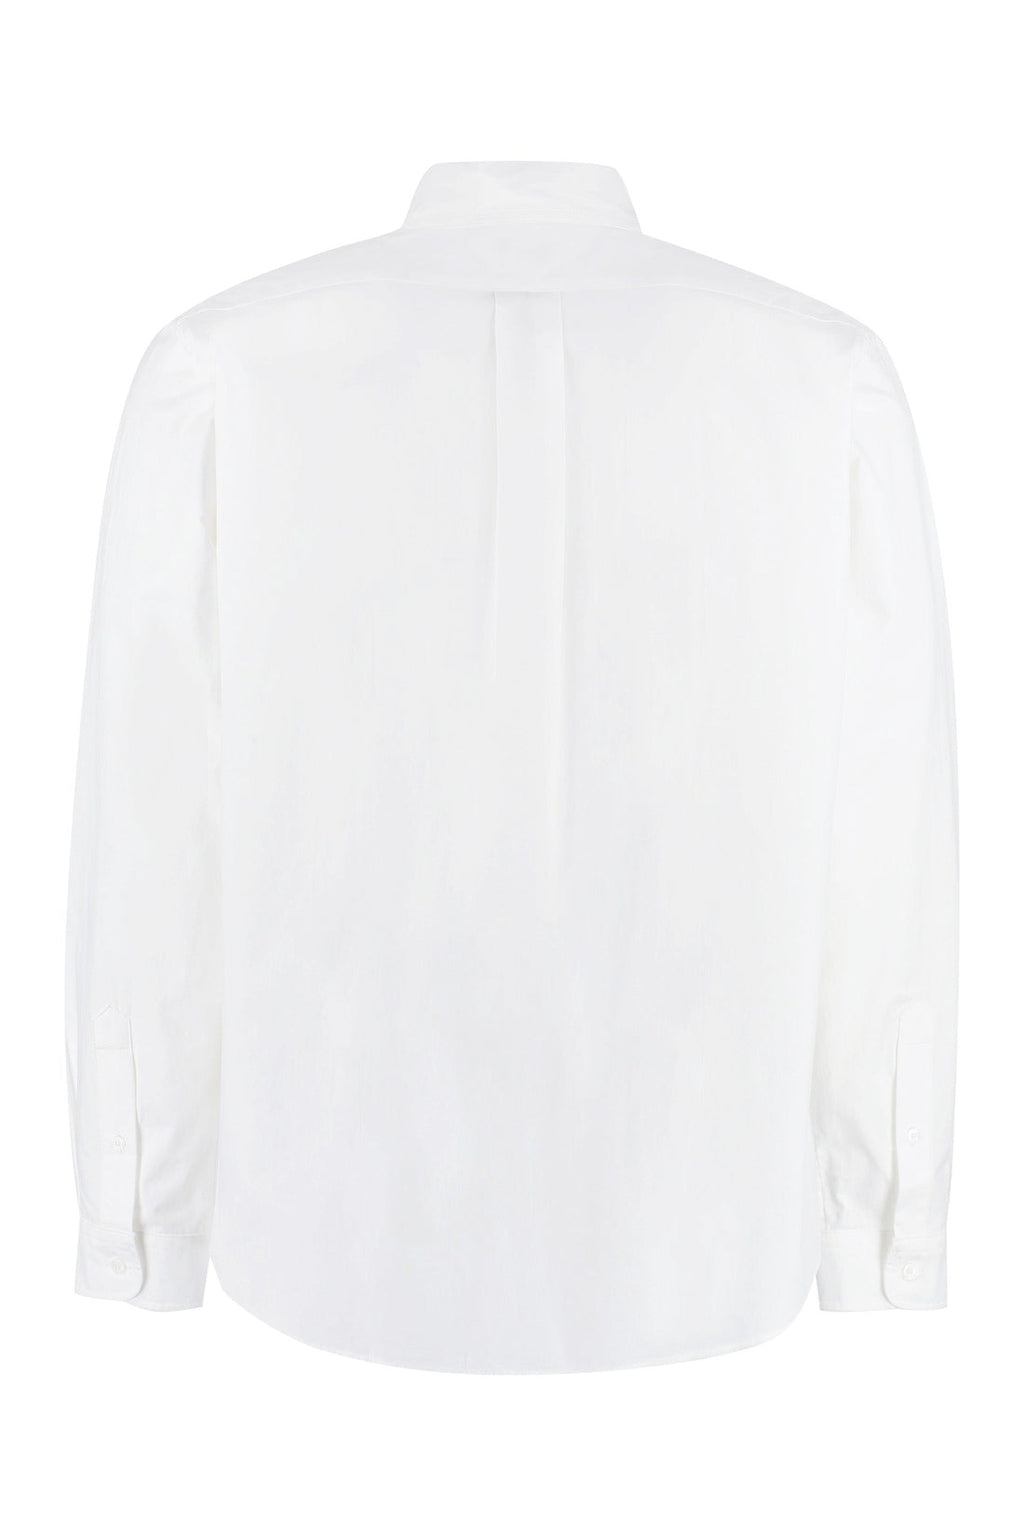 Kenzo-OUTLET-SALE-Button-down collar cotton shirt-ARCHIVIST